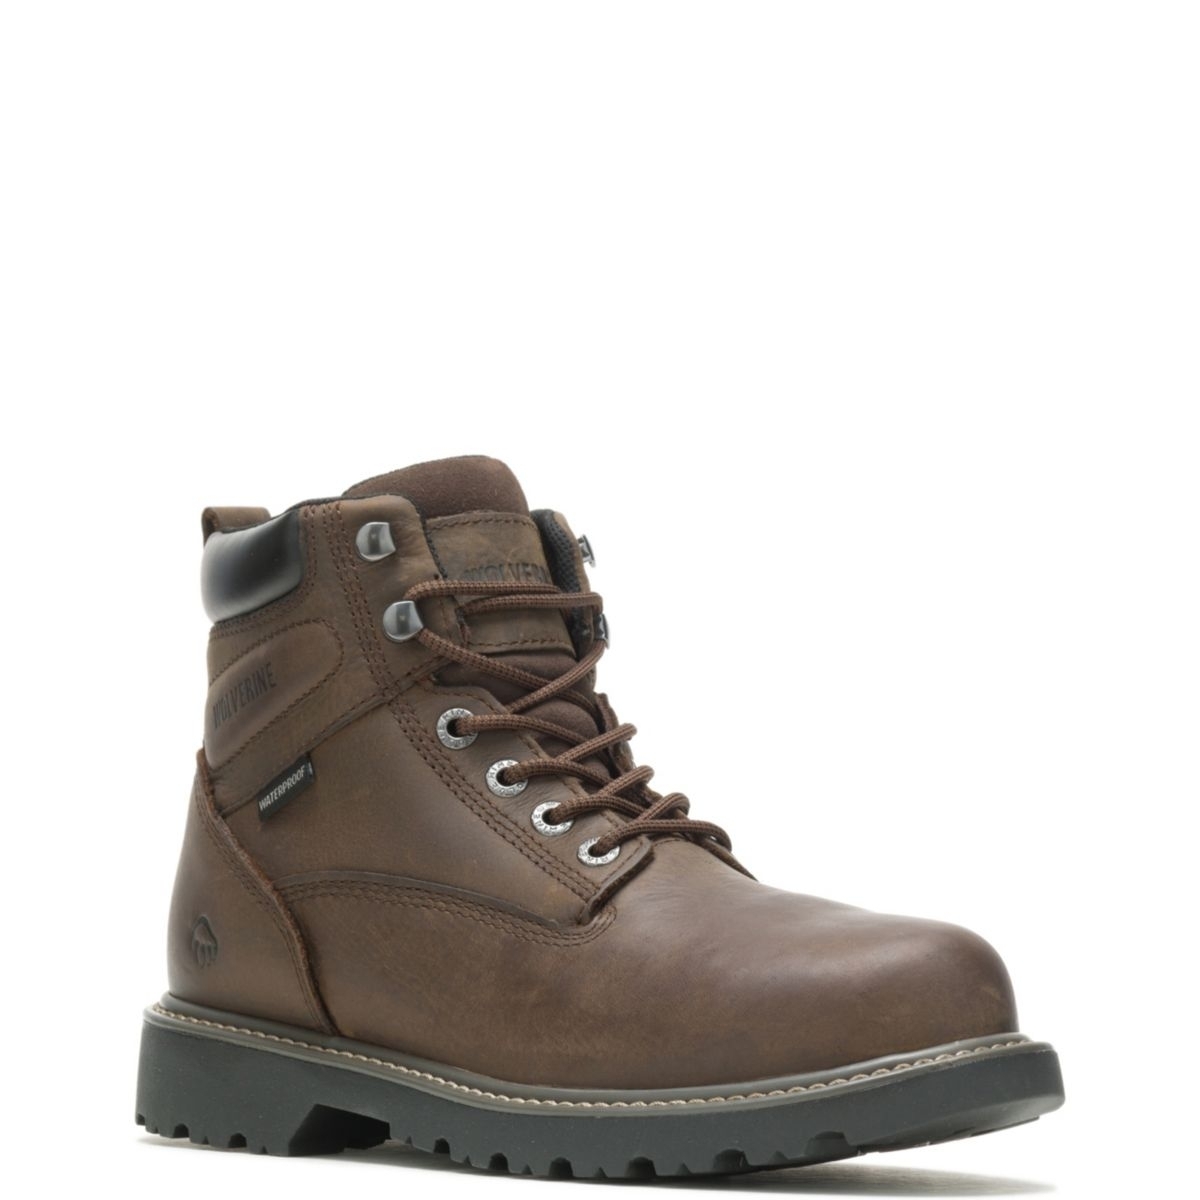 WOLVERINE Men's Floorhand 6 Waterproof Steel Toe Work Boot Dark Brown - W10633 DARK BROWN - DARK BROWN, 11 X-Wide